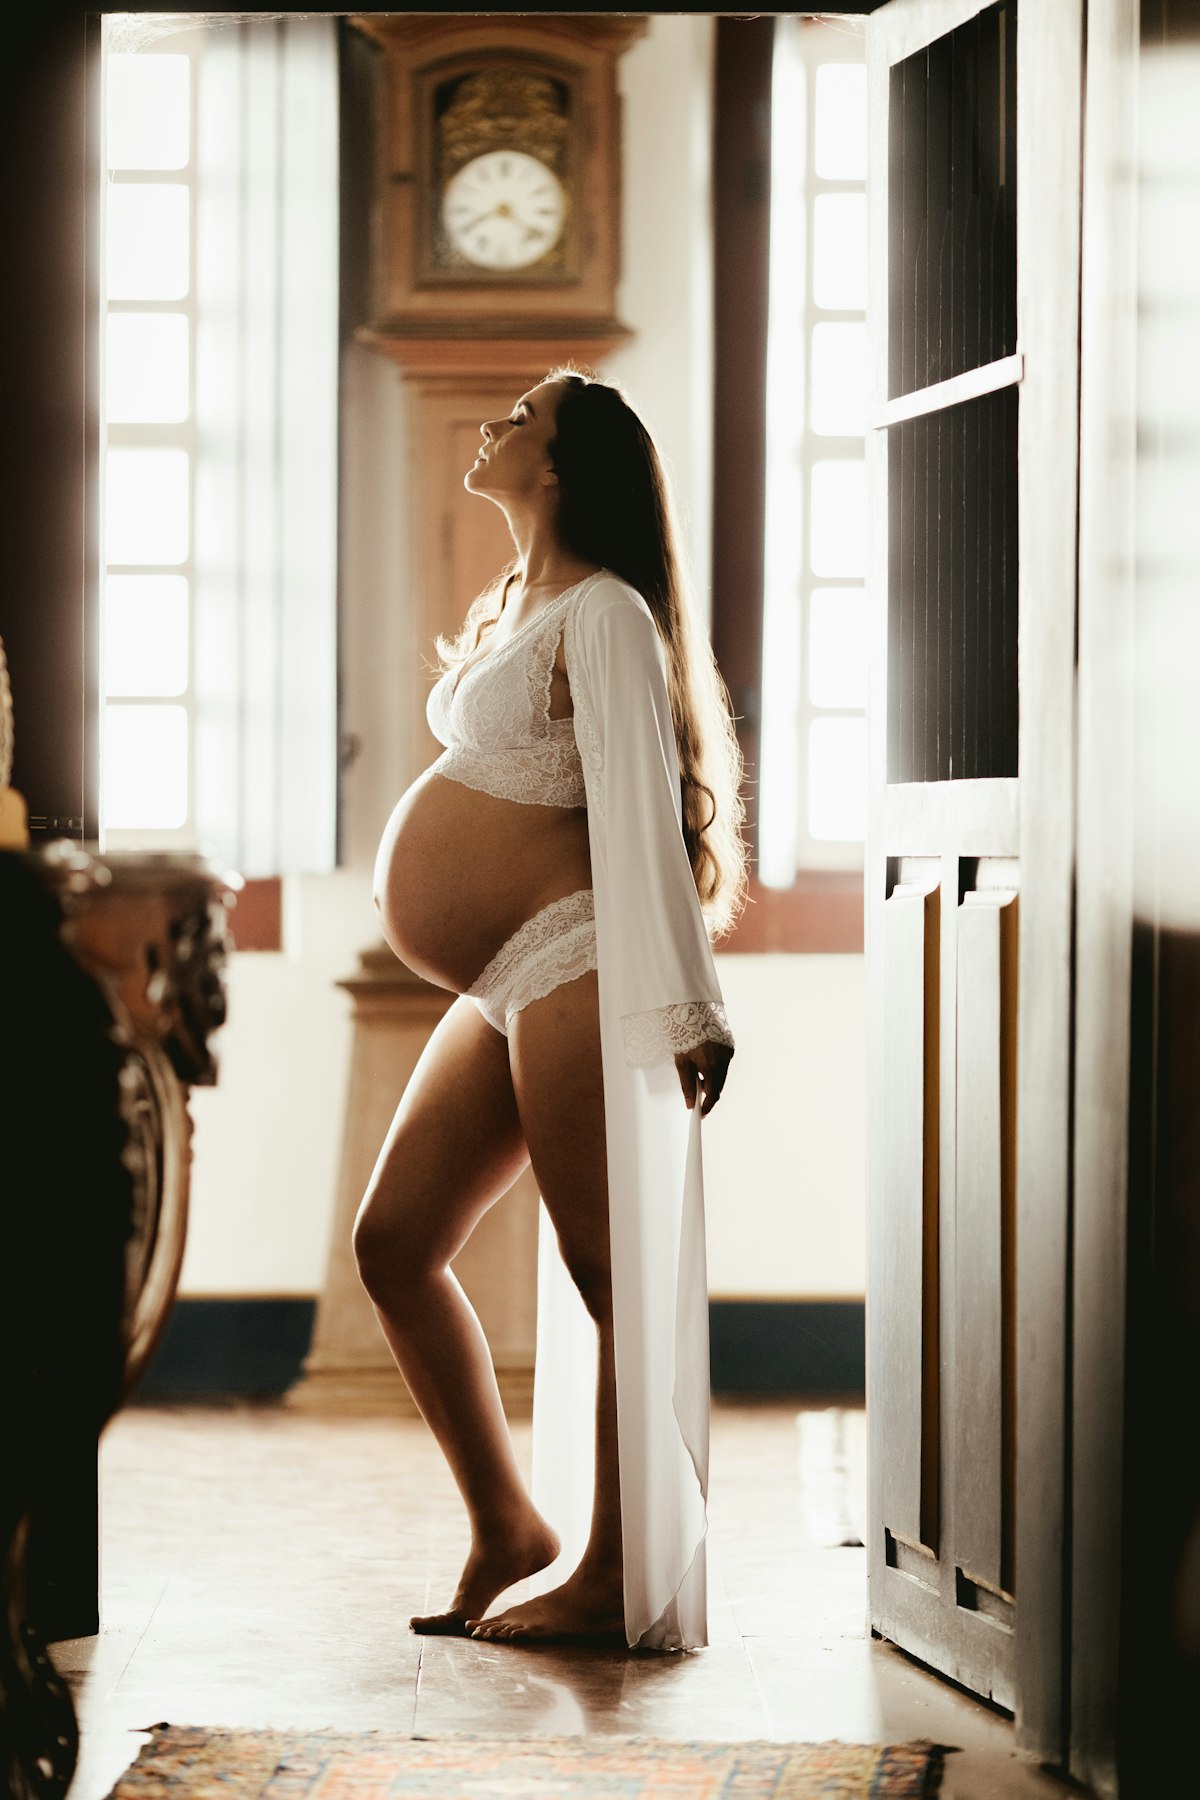 12 meilleures soins anti-vergetures pour femme enceinte